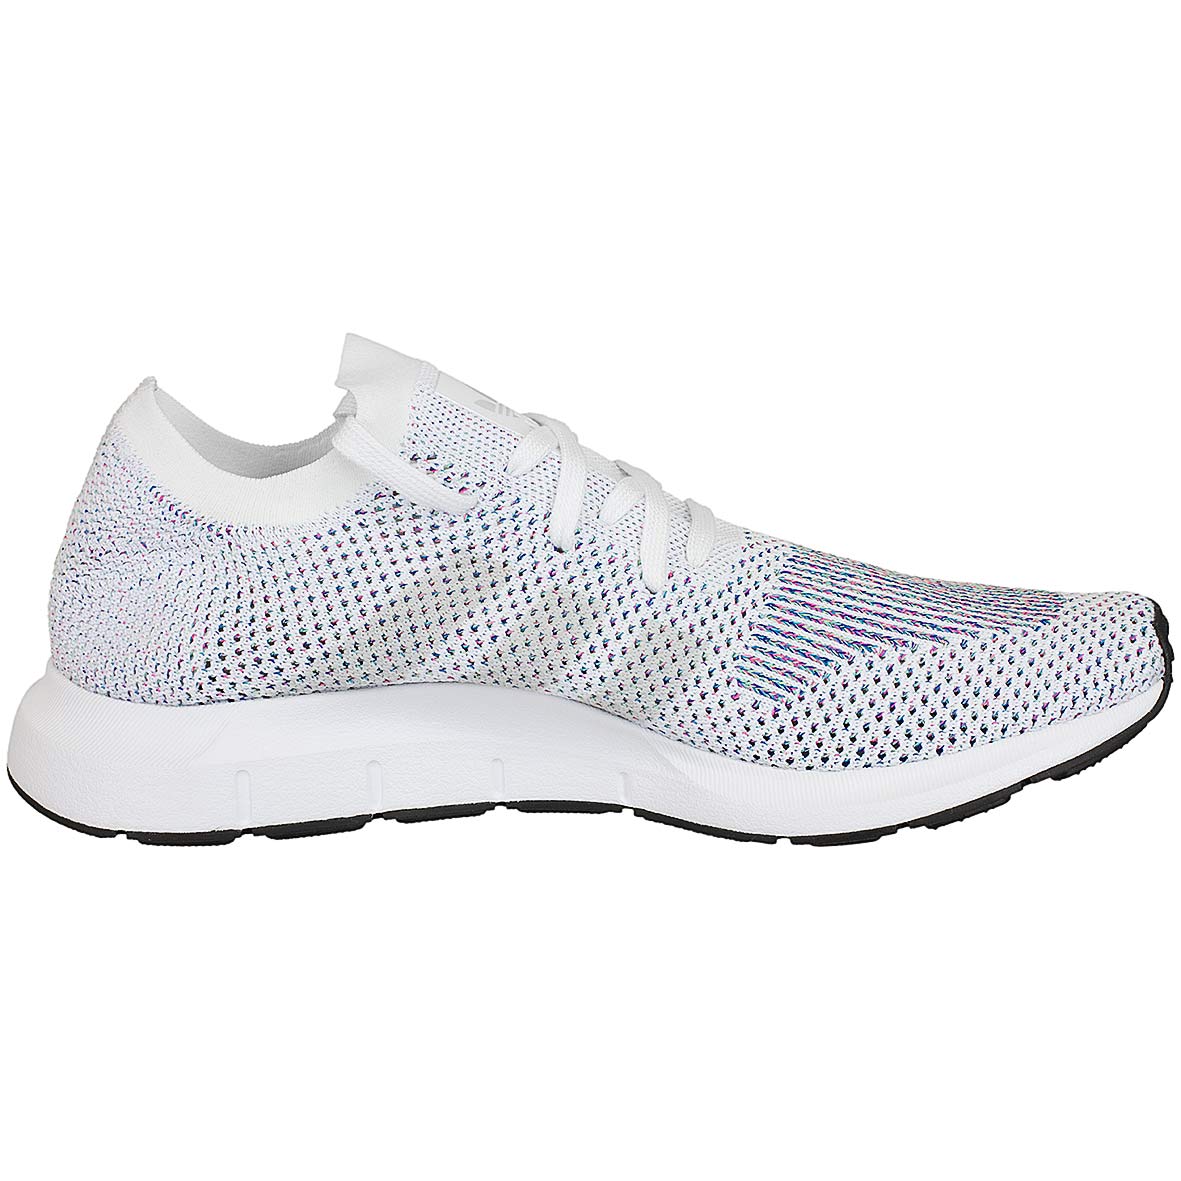 ☆ Adidas Originals Sneaker Swift Run Primeknit weiß/grey - hier bestellen!